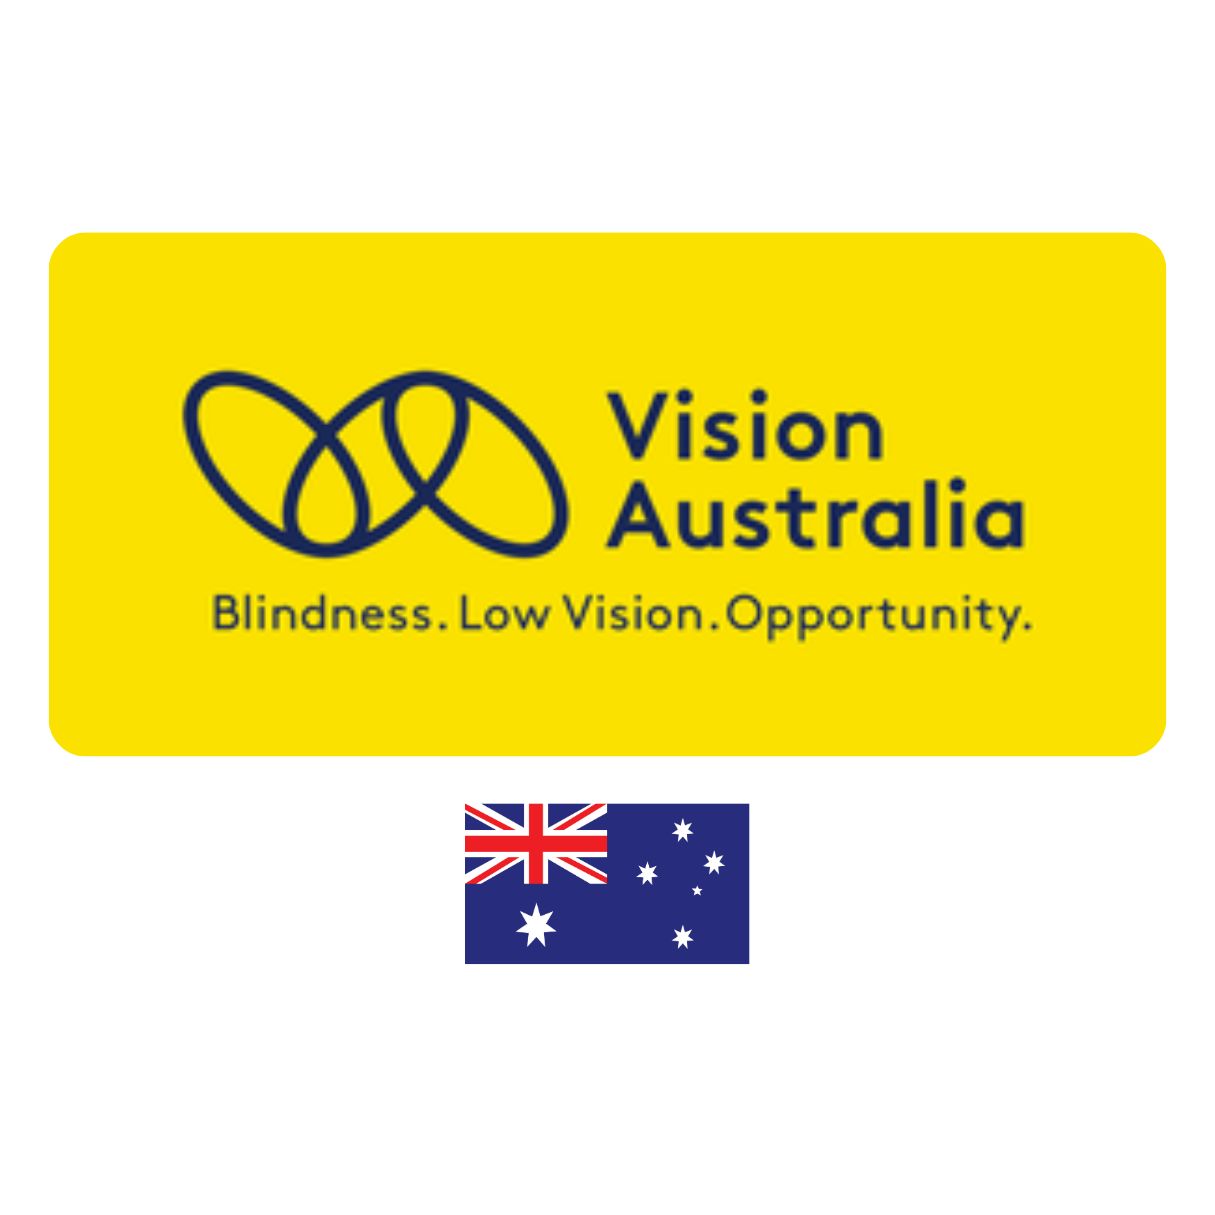 Vision Australia Logo and Australia flag